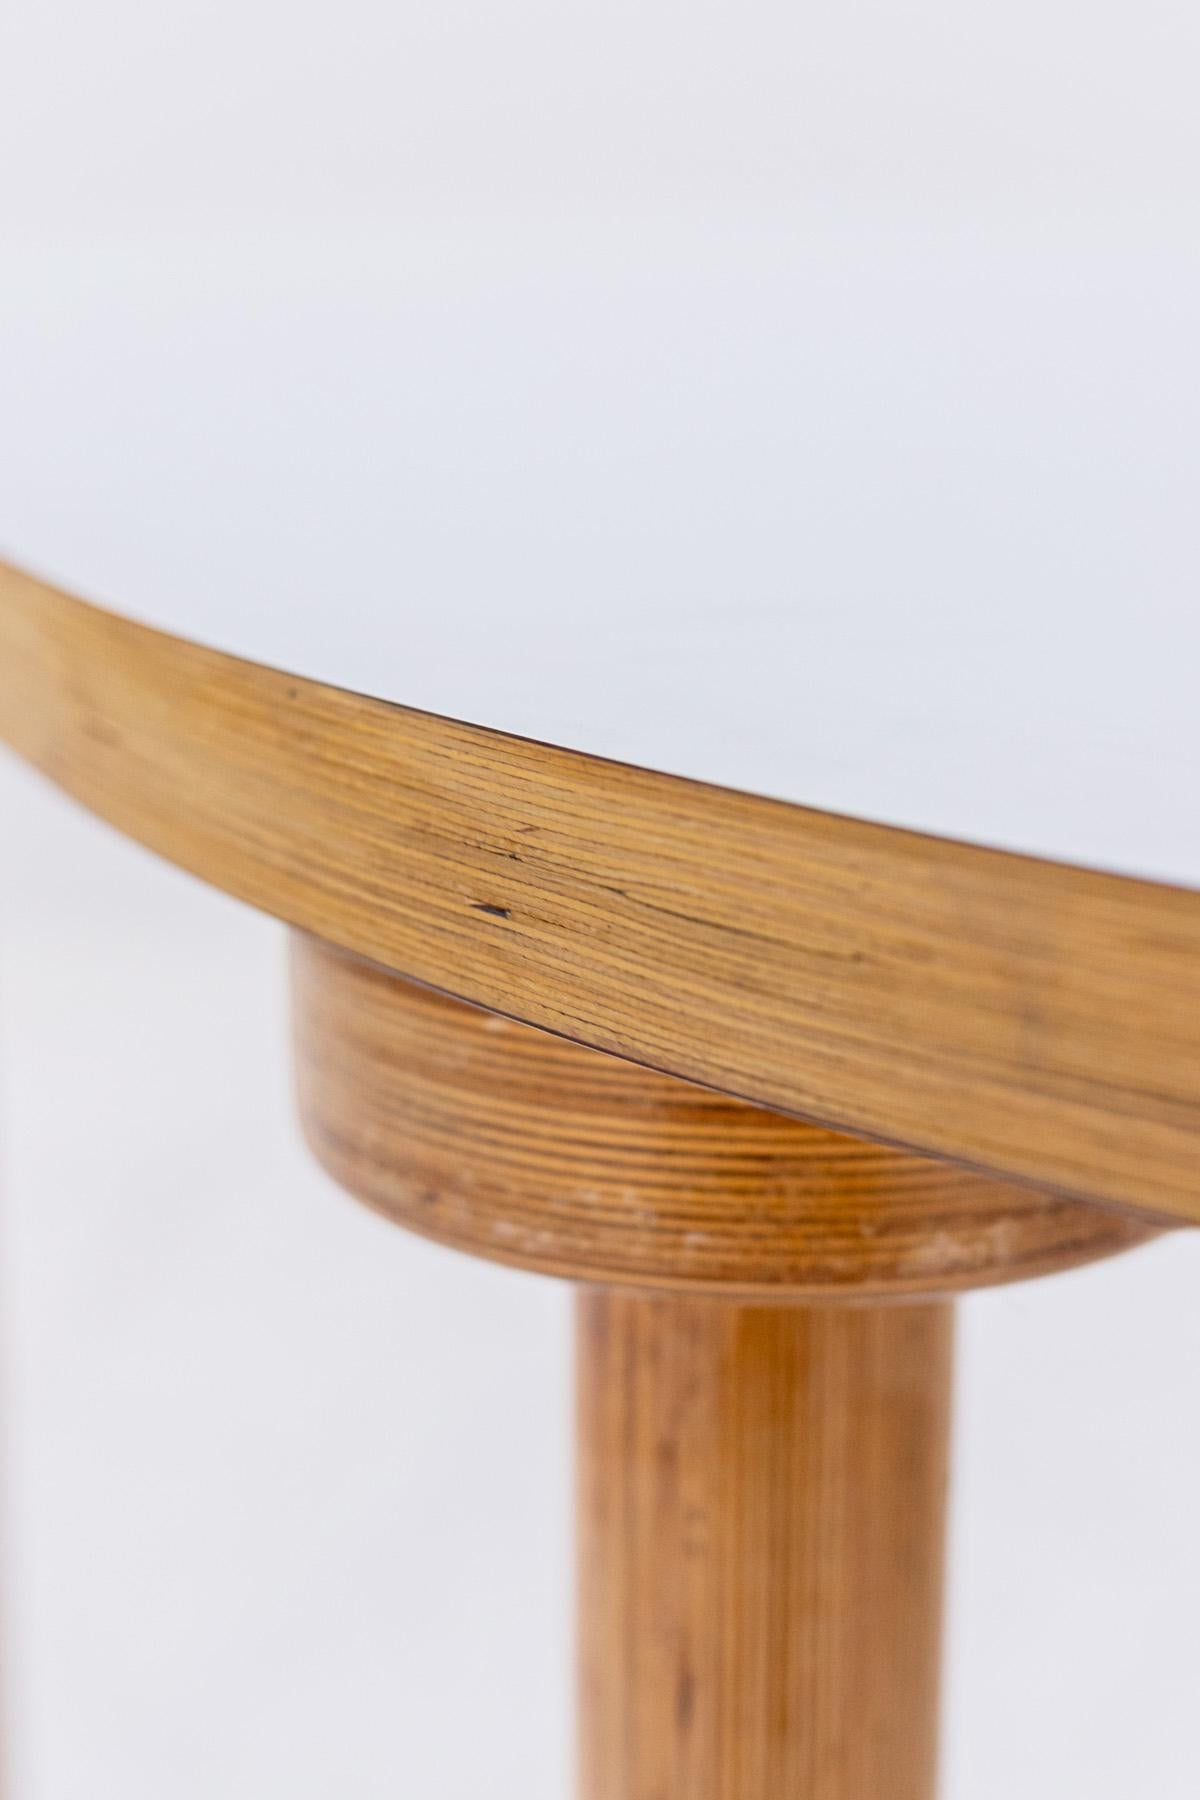 Wunderschöner Tisch, der in den 1970er Jahren von Enzo Mari für den italienischen Edelhersteller Driade entworfen wurde.
Der Tisch ist aus Sperrholz gefertigt, mit einer weichen Holzfarbe, die die schöne Maserung hervorhebt. Die 4 Beine sind ganz